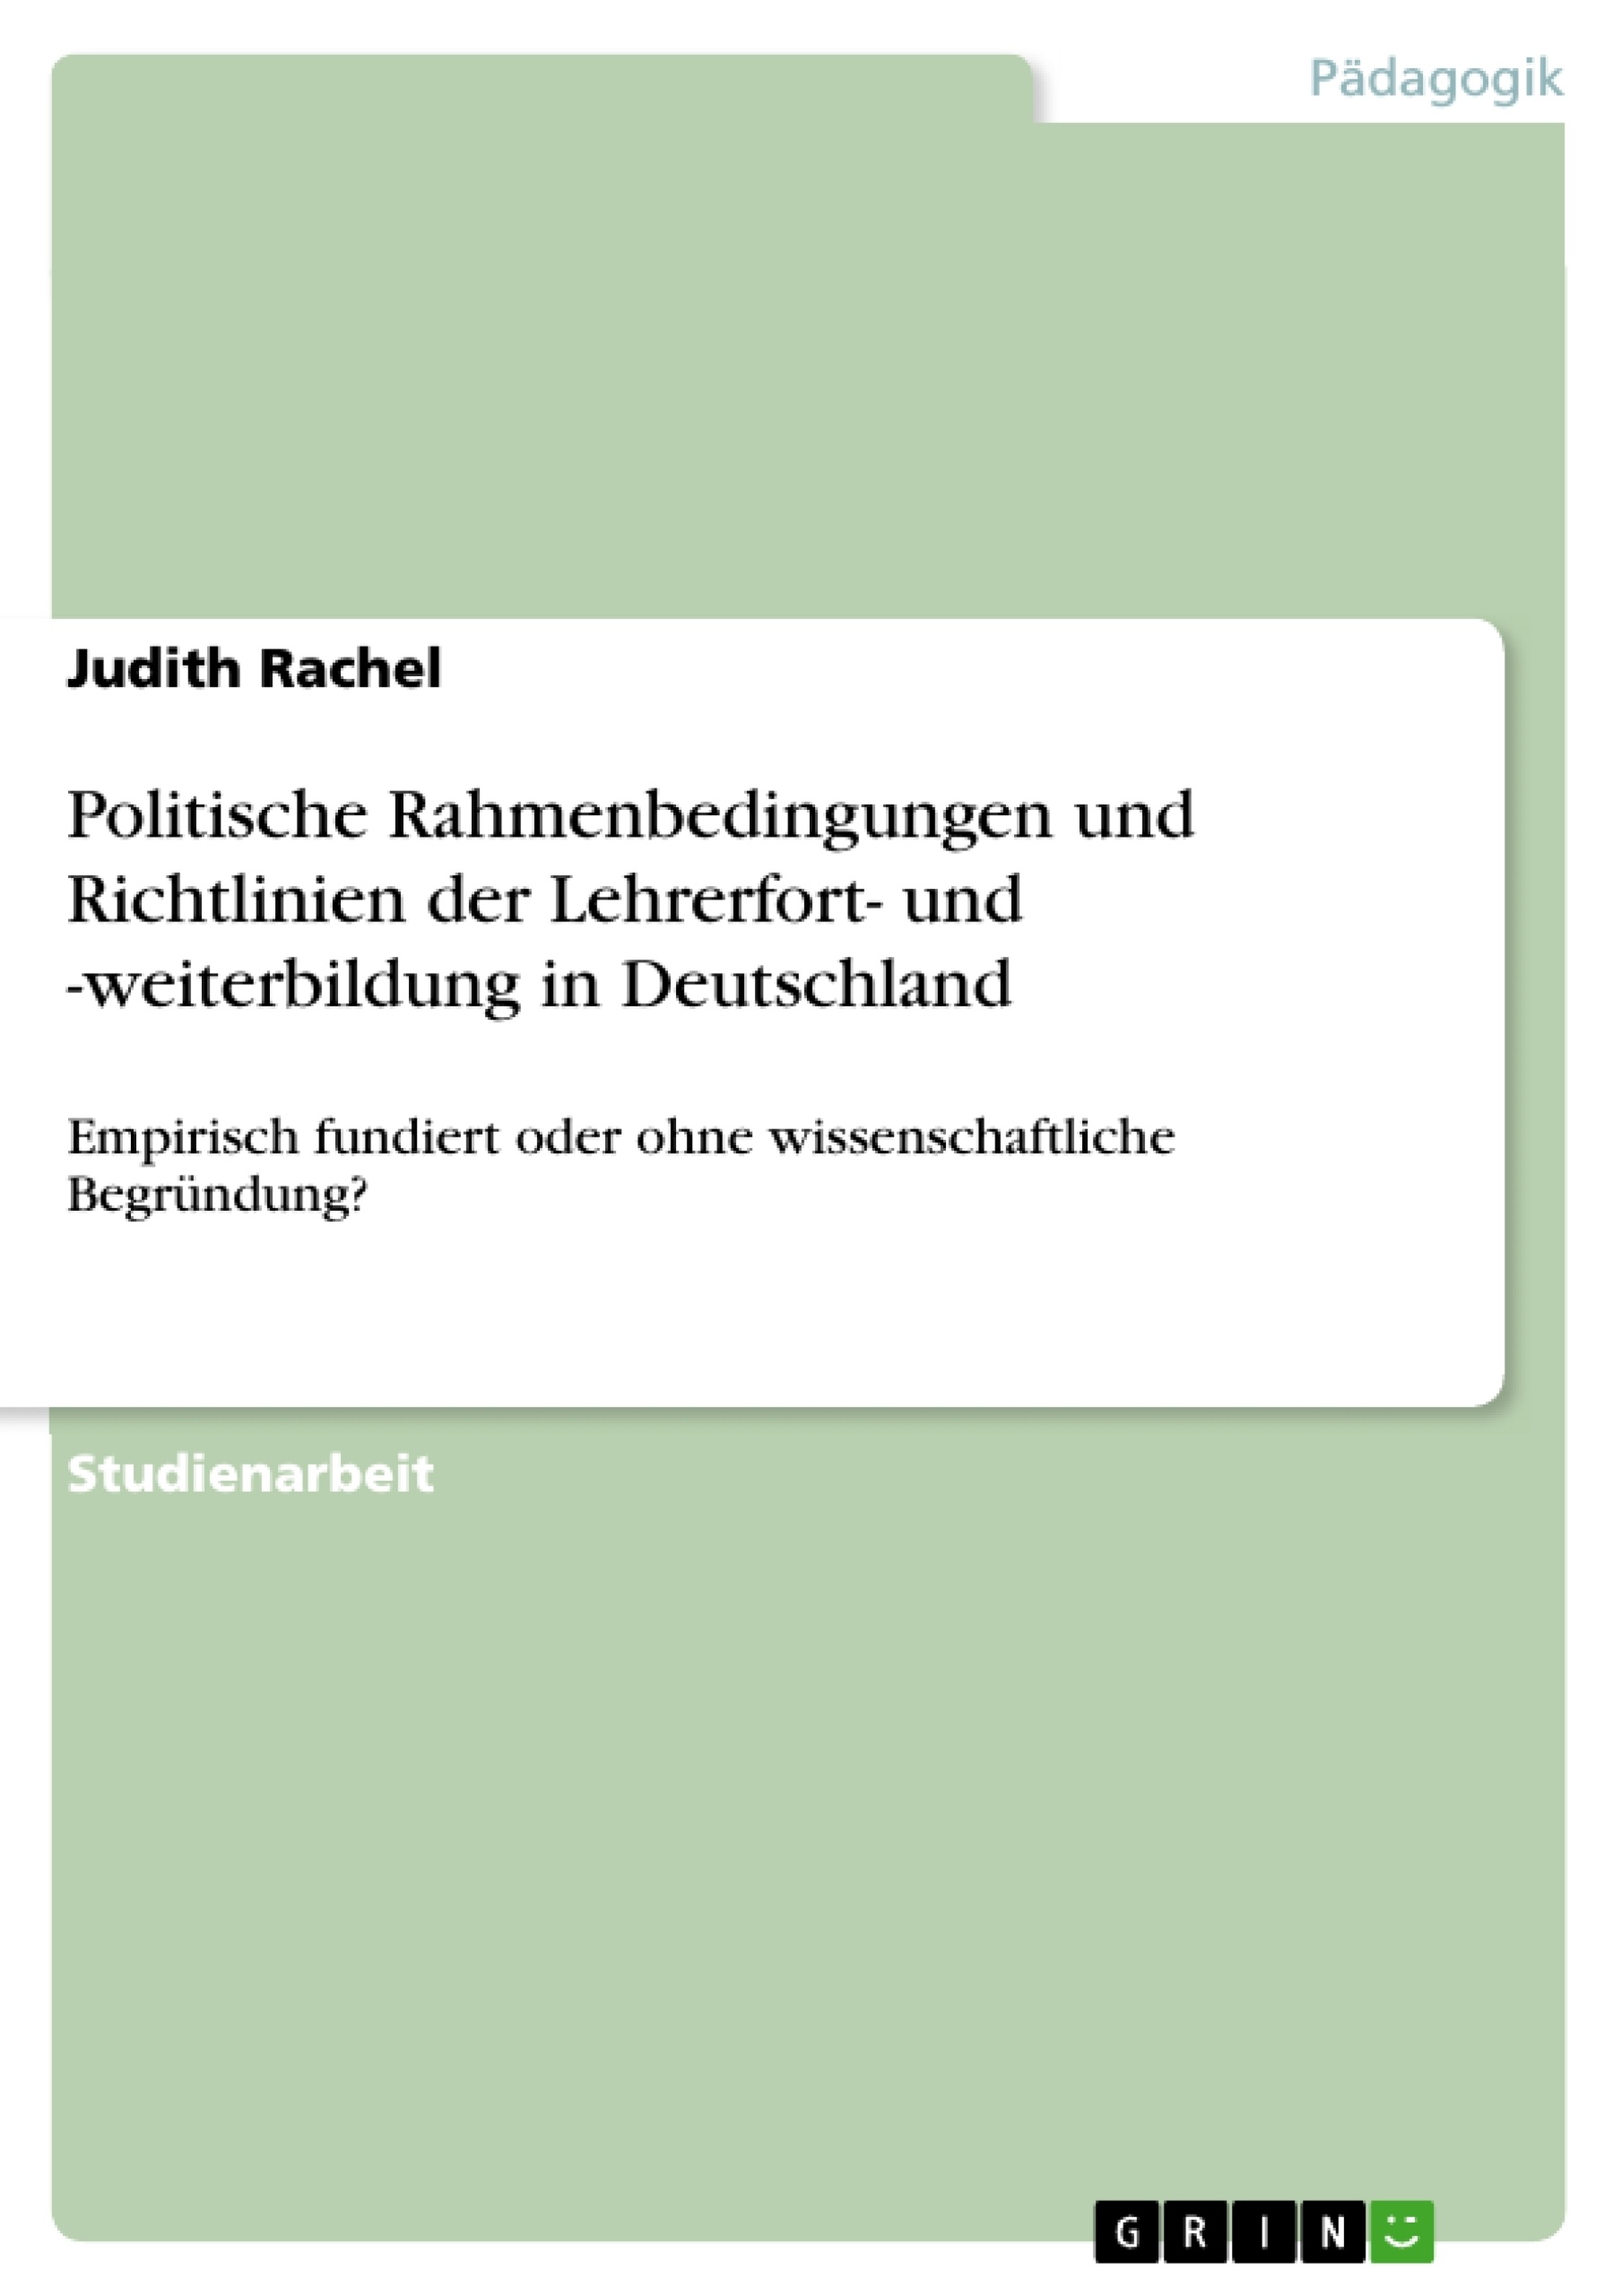 Title: Politische Rahmenbedingungen und Richtlinien der Lehrerfort- und -weiterbildung in Deutschland